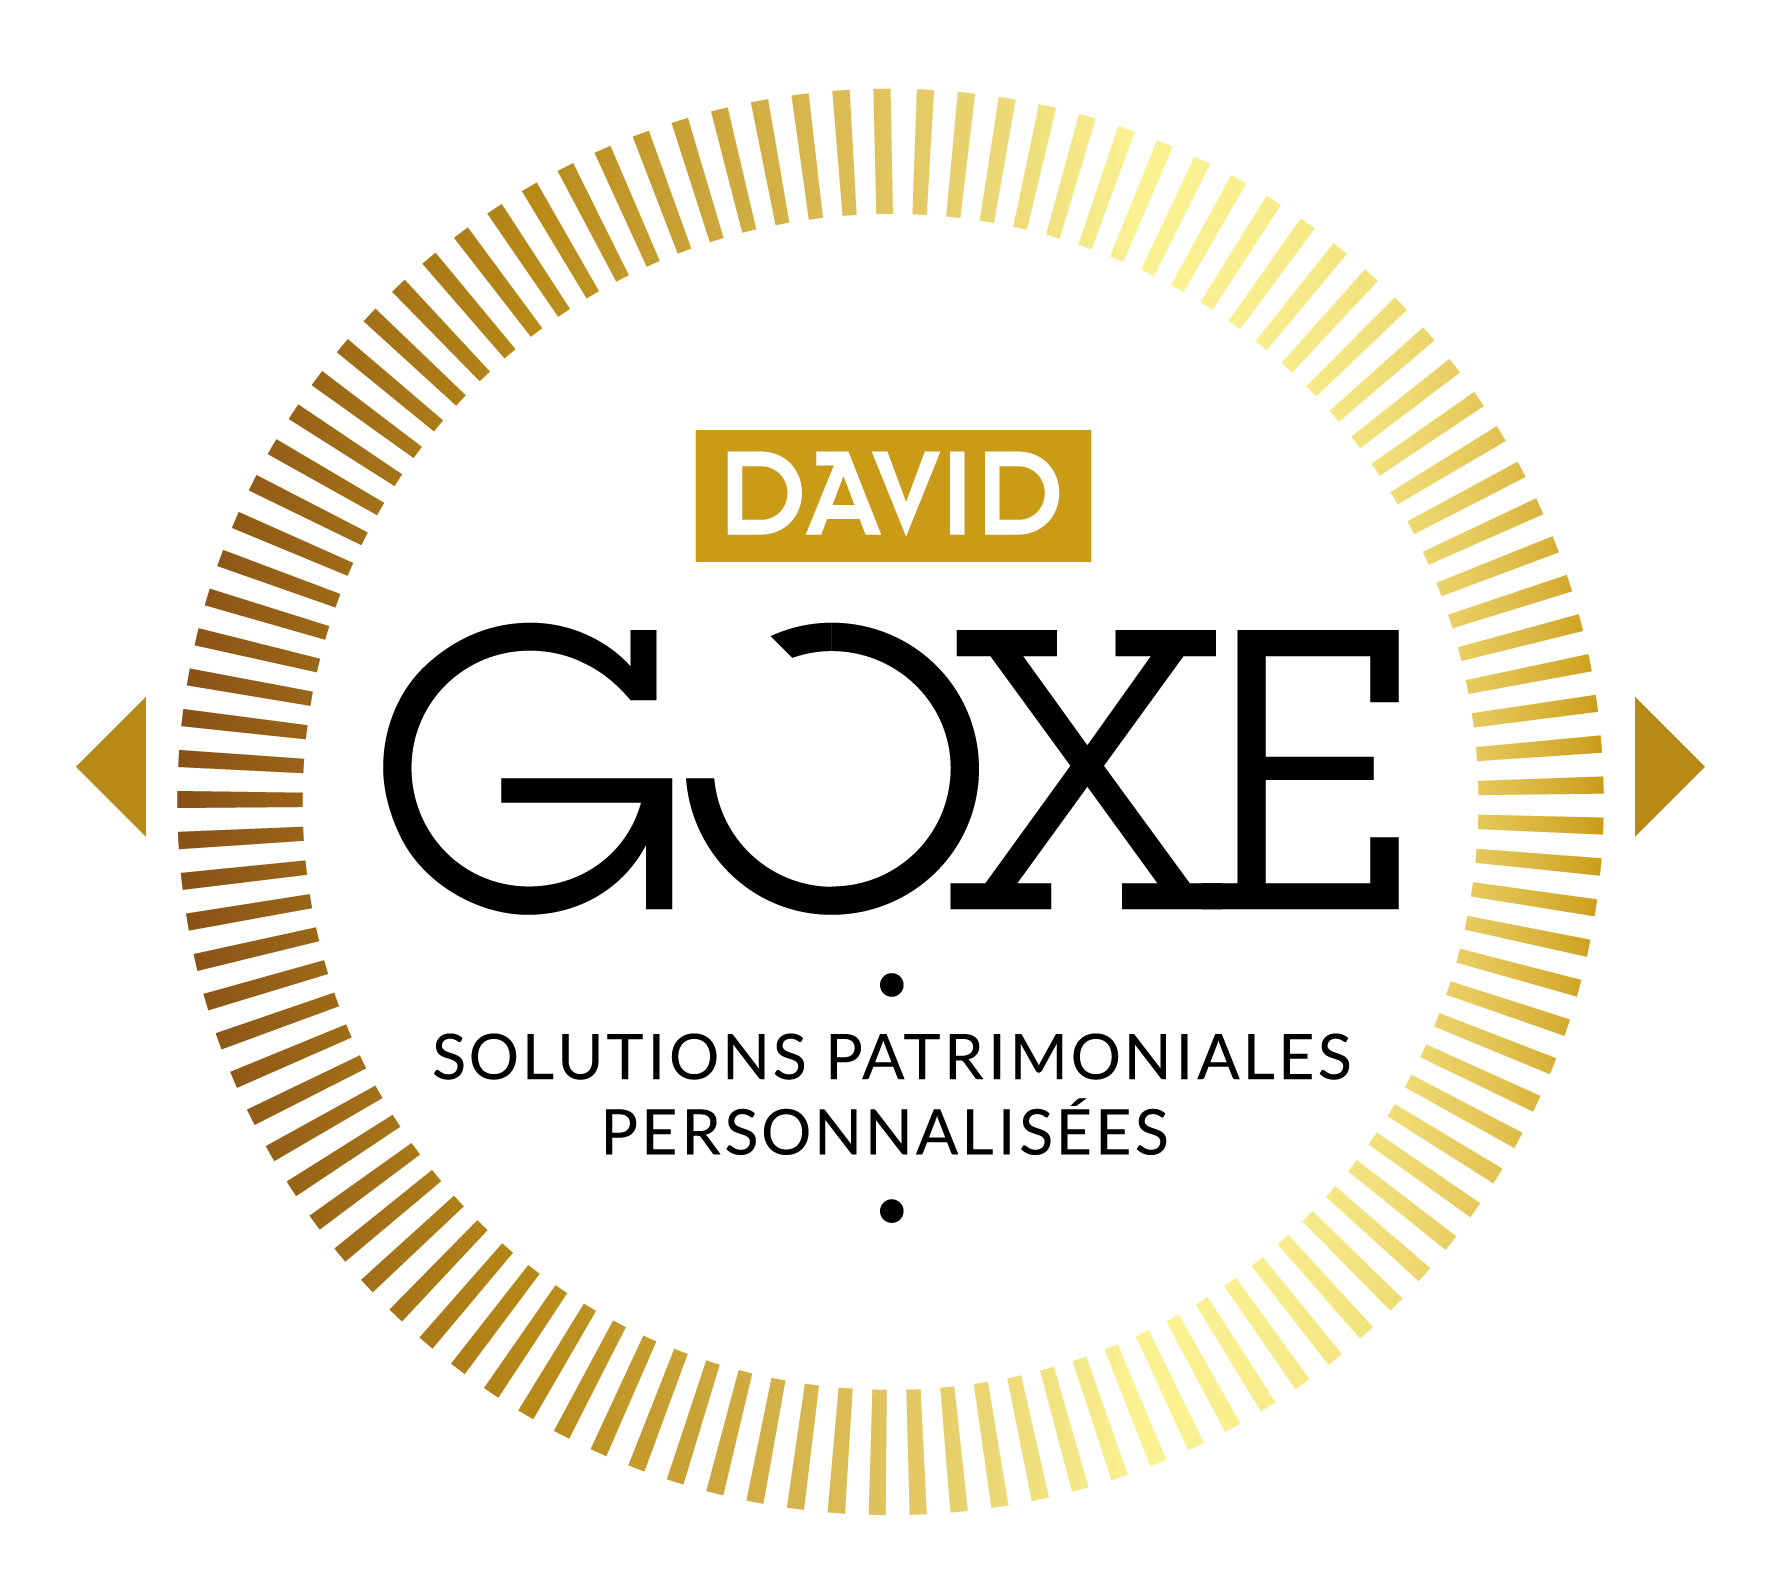 David GOXE - Solutions Patrimoniales Personnalisées, inscrit à l'annuaire deeptinvest